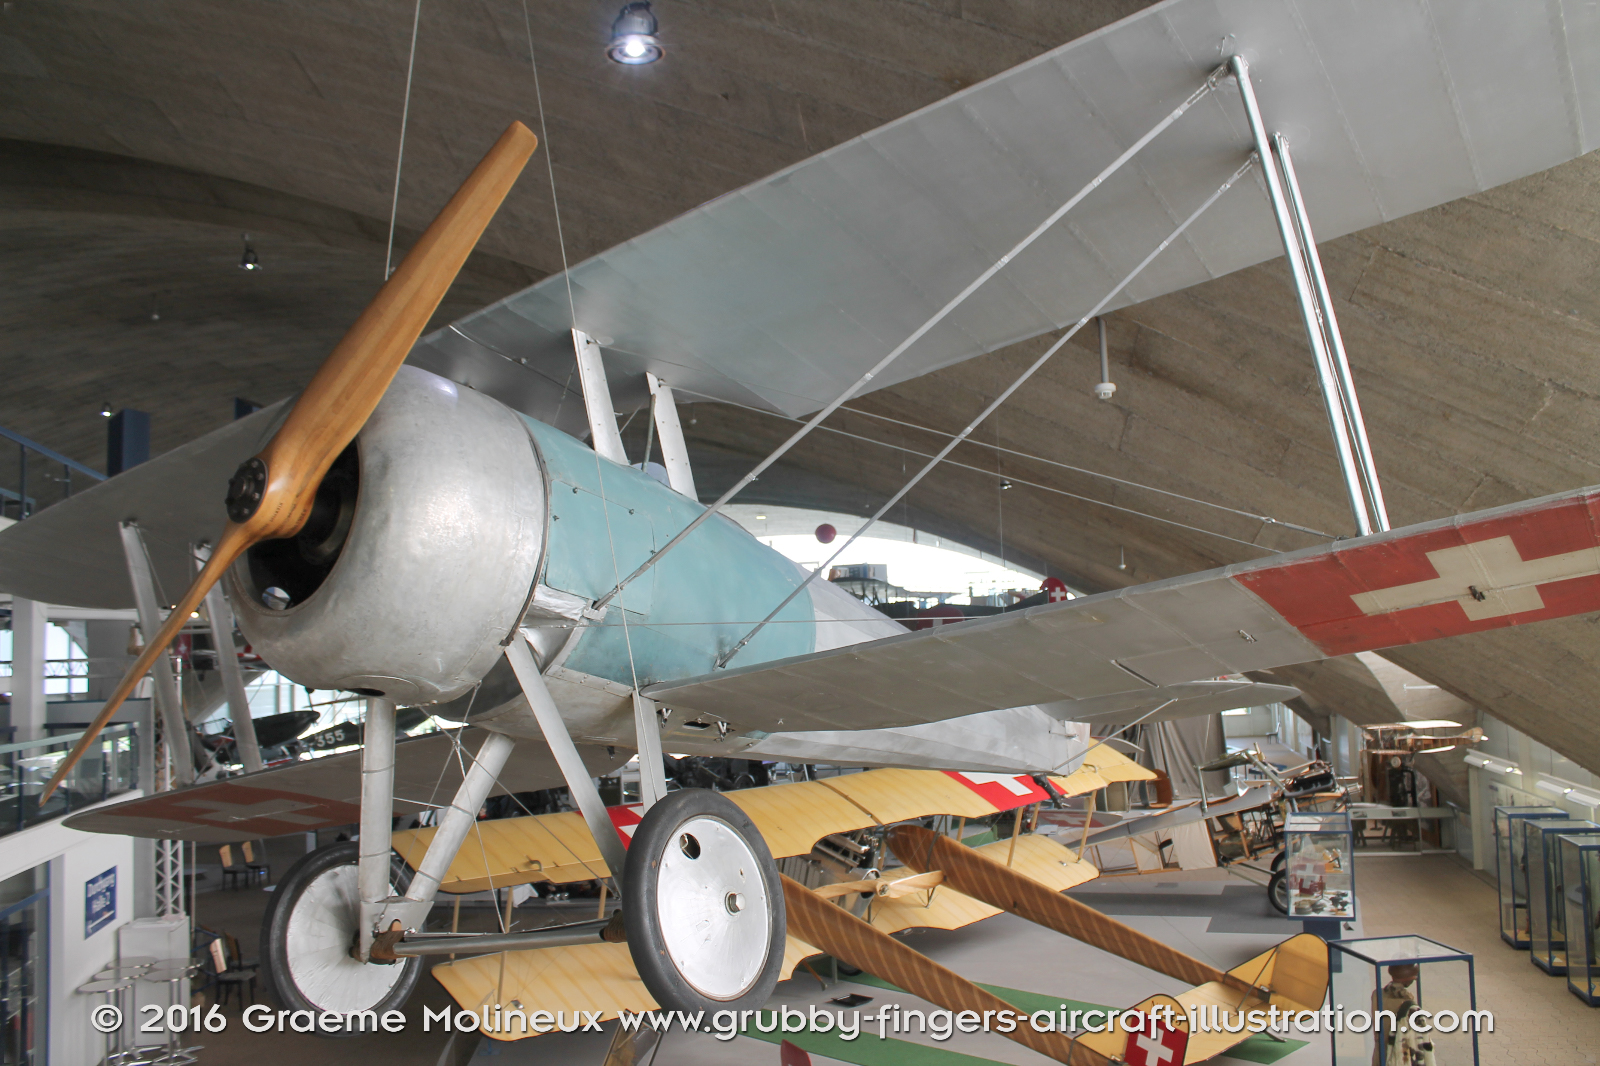 NIEUPORT_N-28_Swiss_Air_Force_Museum_2015_02_GrubbyFingers